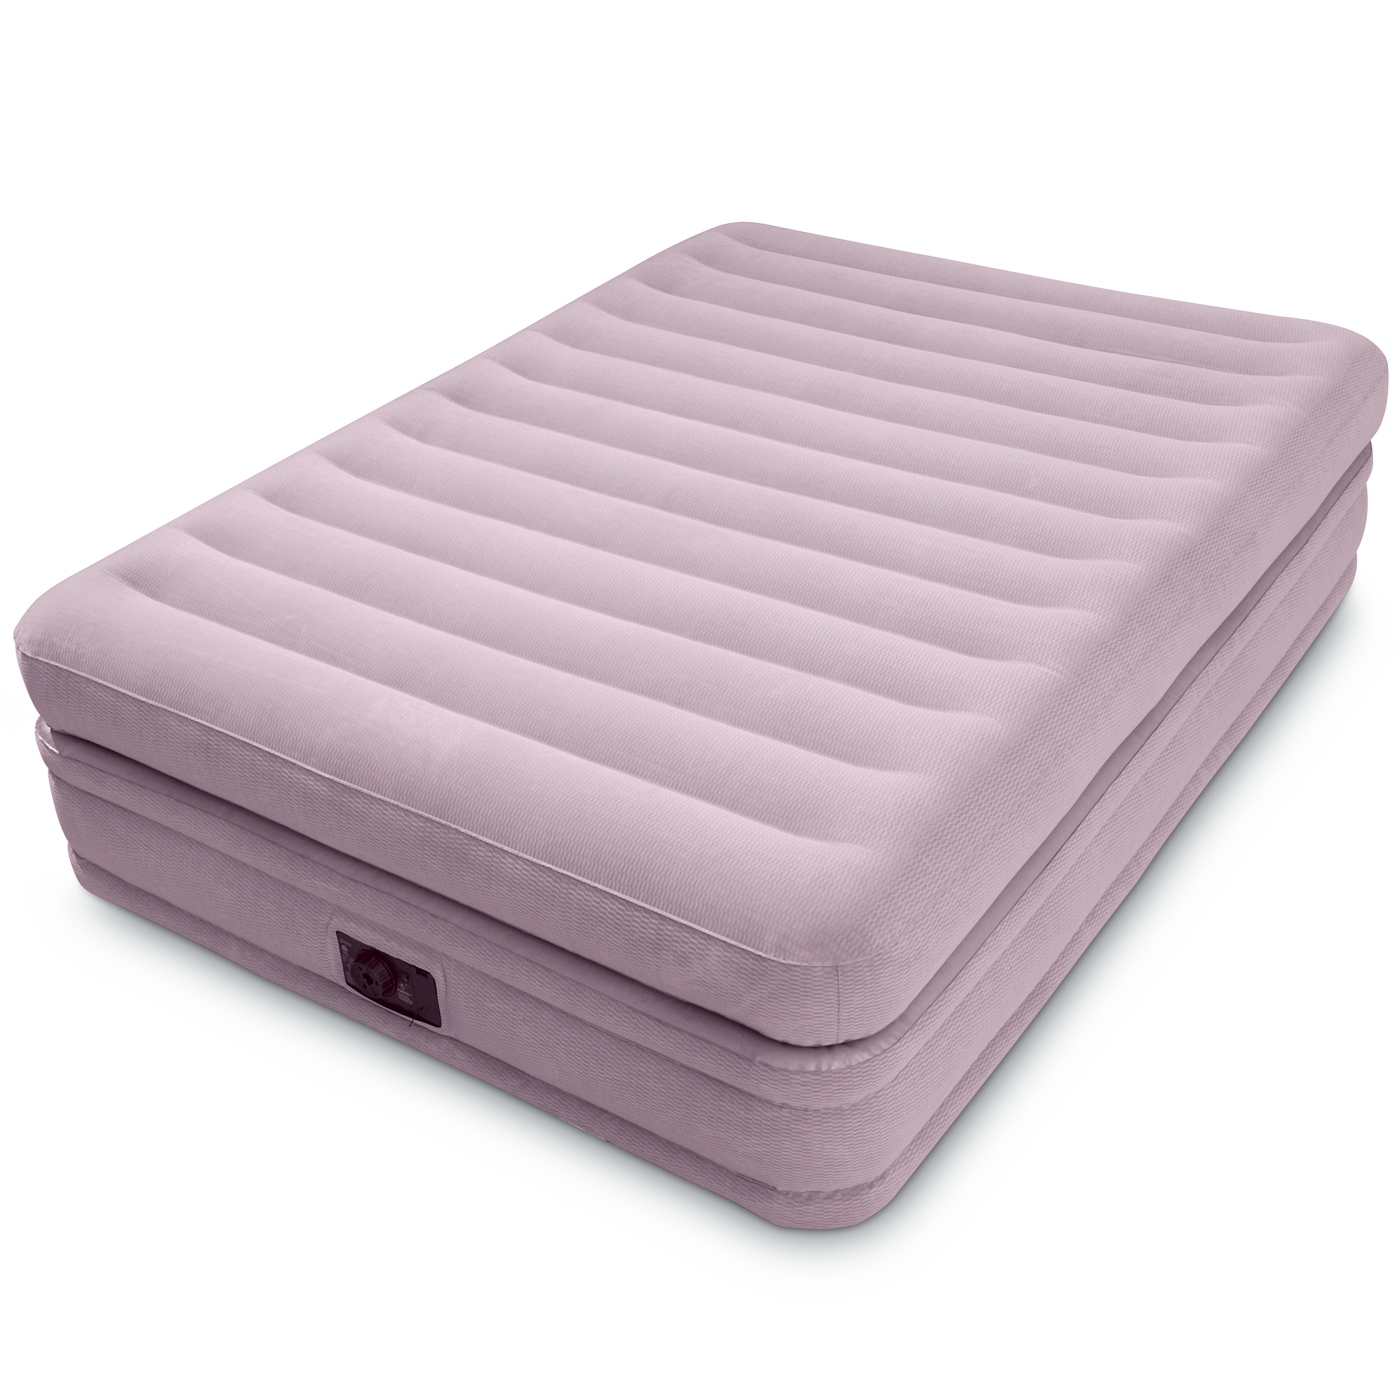 Надувная кровать Intex Prime Comfort Elevated Airbed (64444)